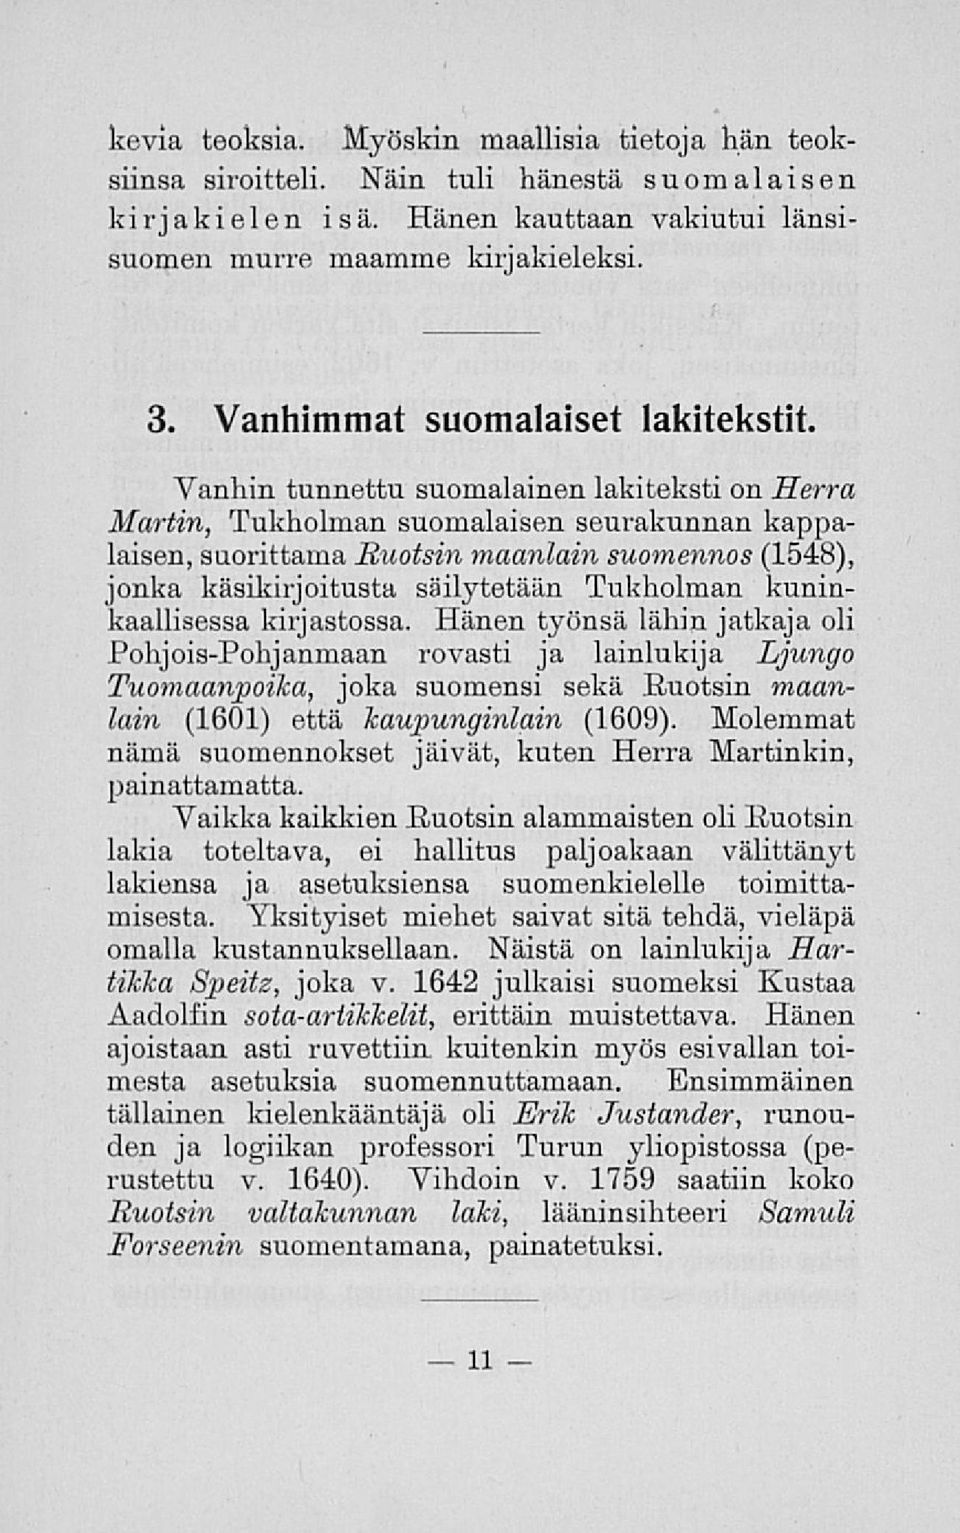 Vanhin tunnettu suomalainen lakiteksti on Herra Martin, Tukholman suomalaisen seurakunnan kappalaisen, suorittama Ruotsin maanlain suomennos (1548), jonka käsikirjoitusta säilytetään Tukholman